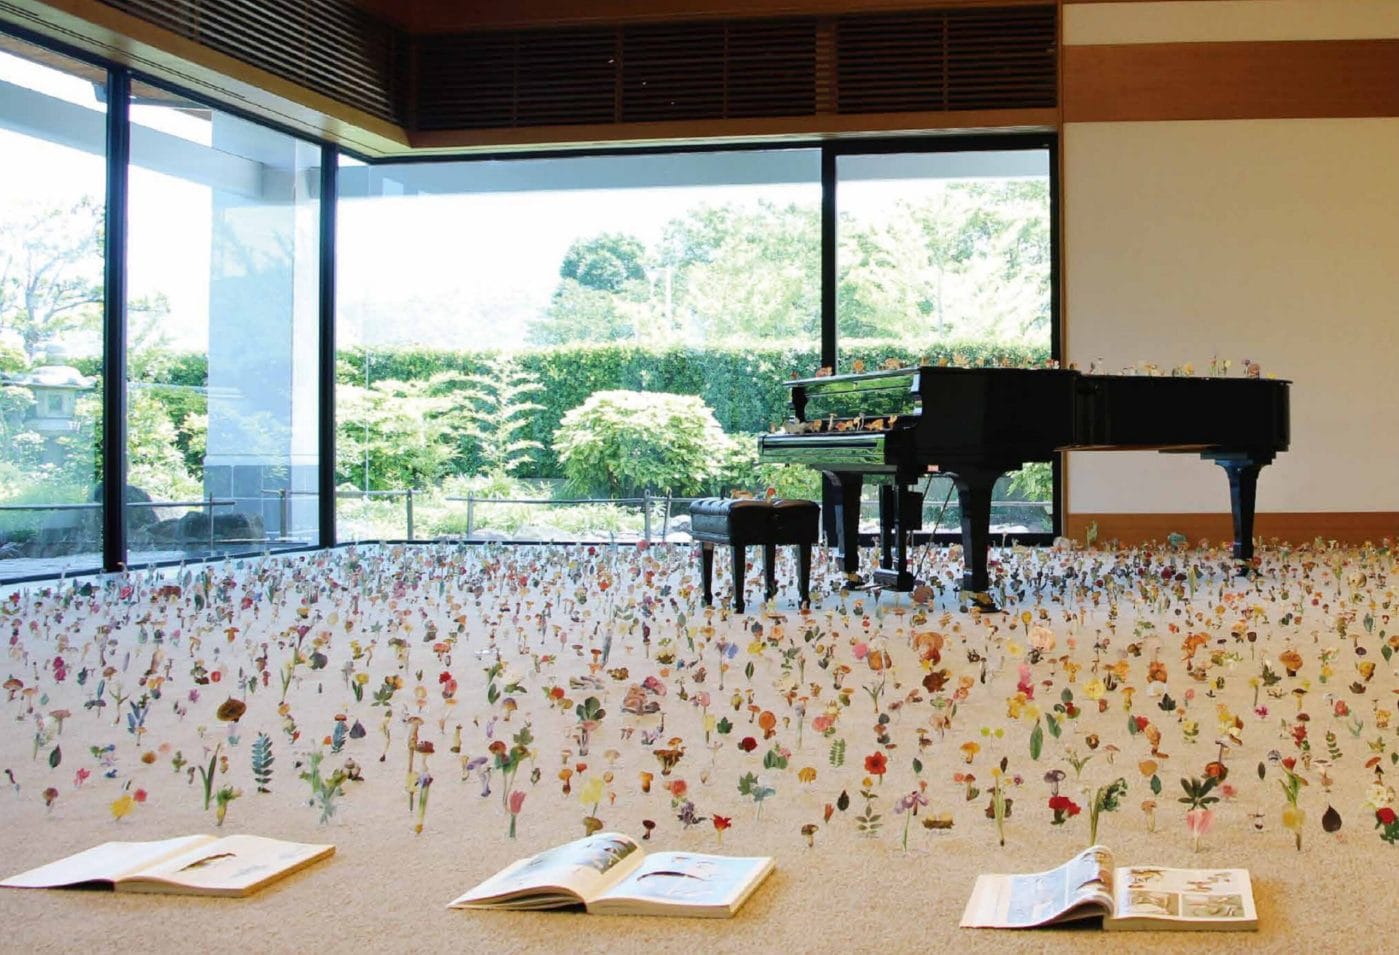 東大阪市民美術センターにて、特別展「ひみつの花園」開催。「花園」の伝承に立ち返り、5人の現代美術家が作品を発表。